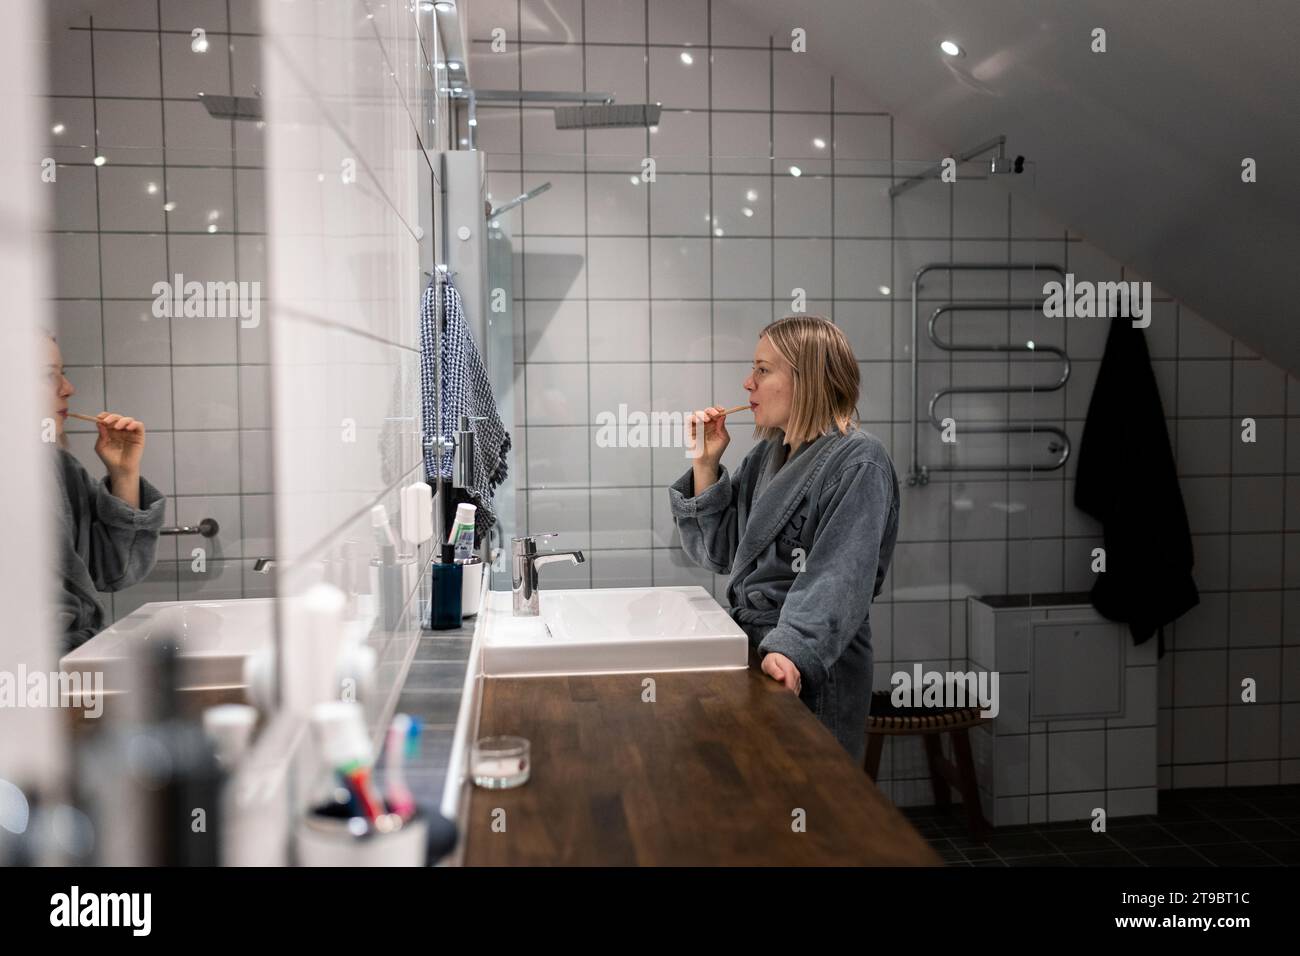 Seitenansicht der jungen blonden Frau, die im Bad Zähne putzt Stockfoto